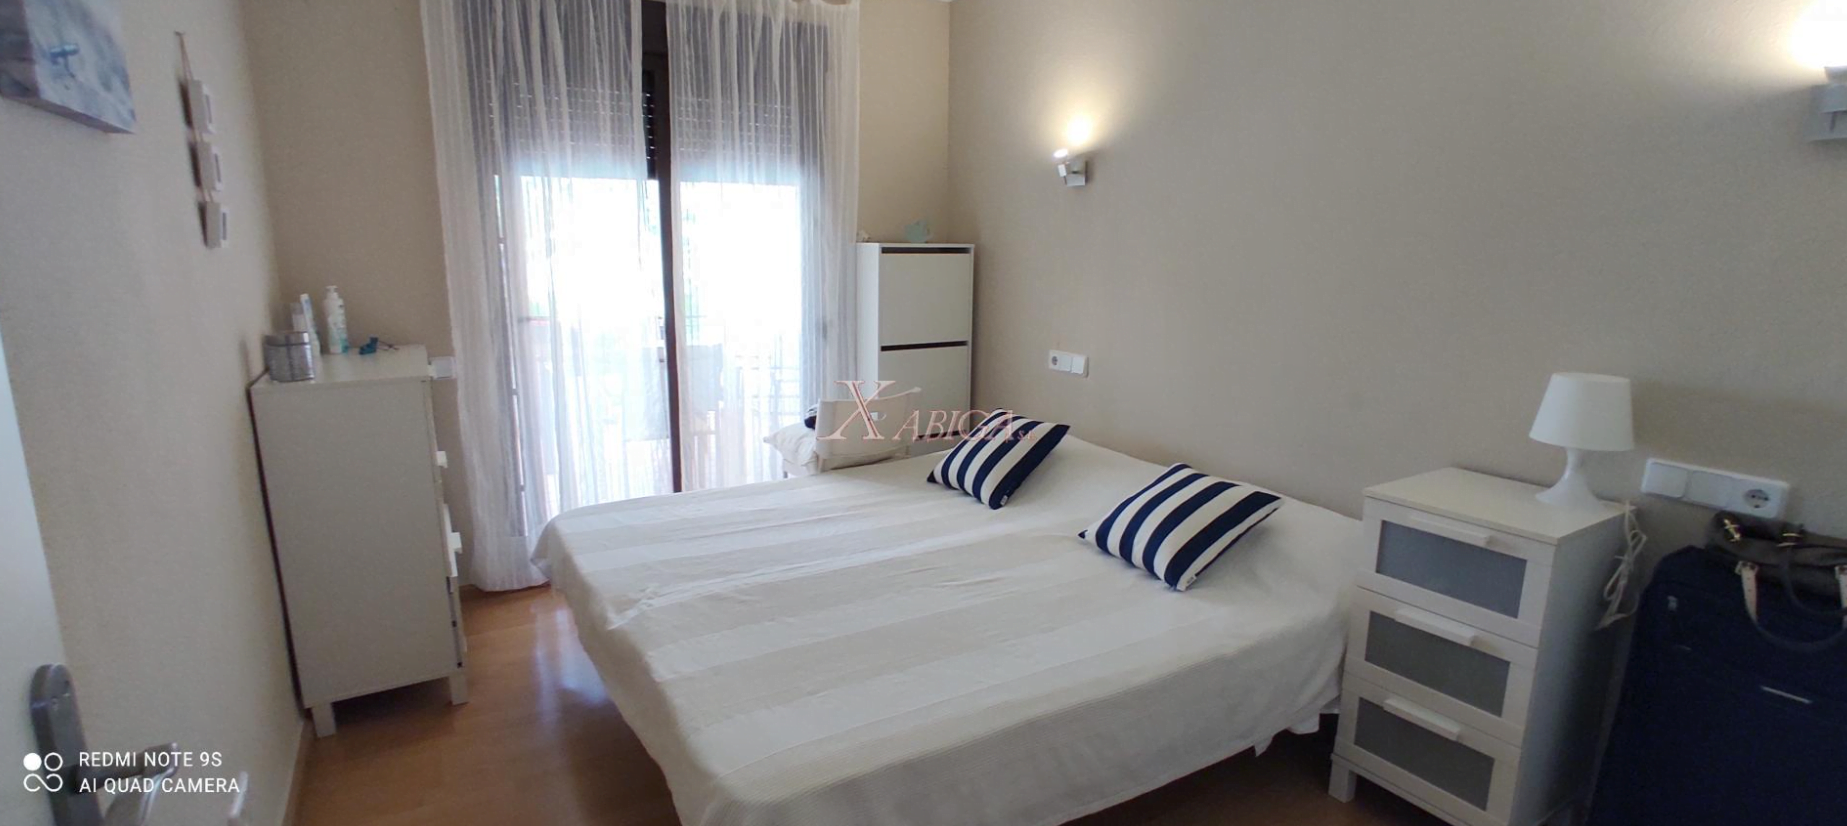 Dormitorio del apartamento en Jávea disponible con Xabiga Inmobiliaria